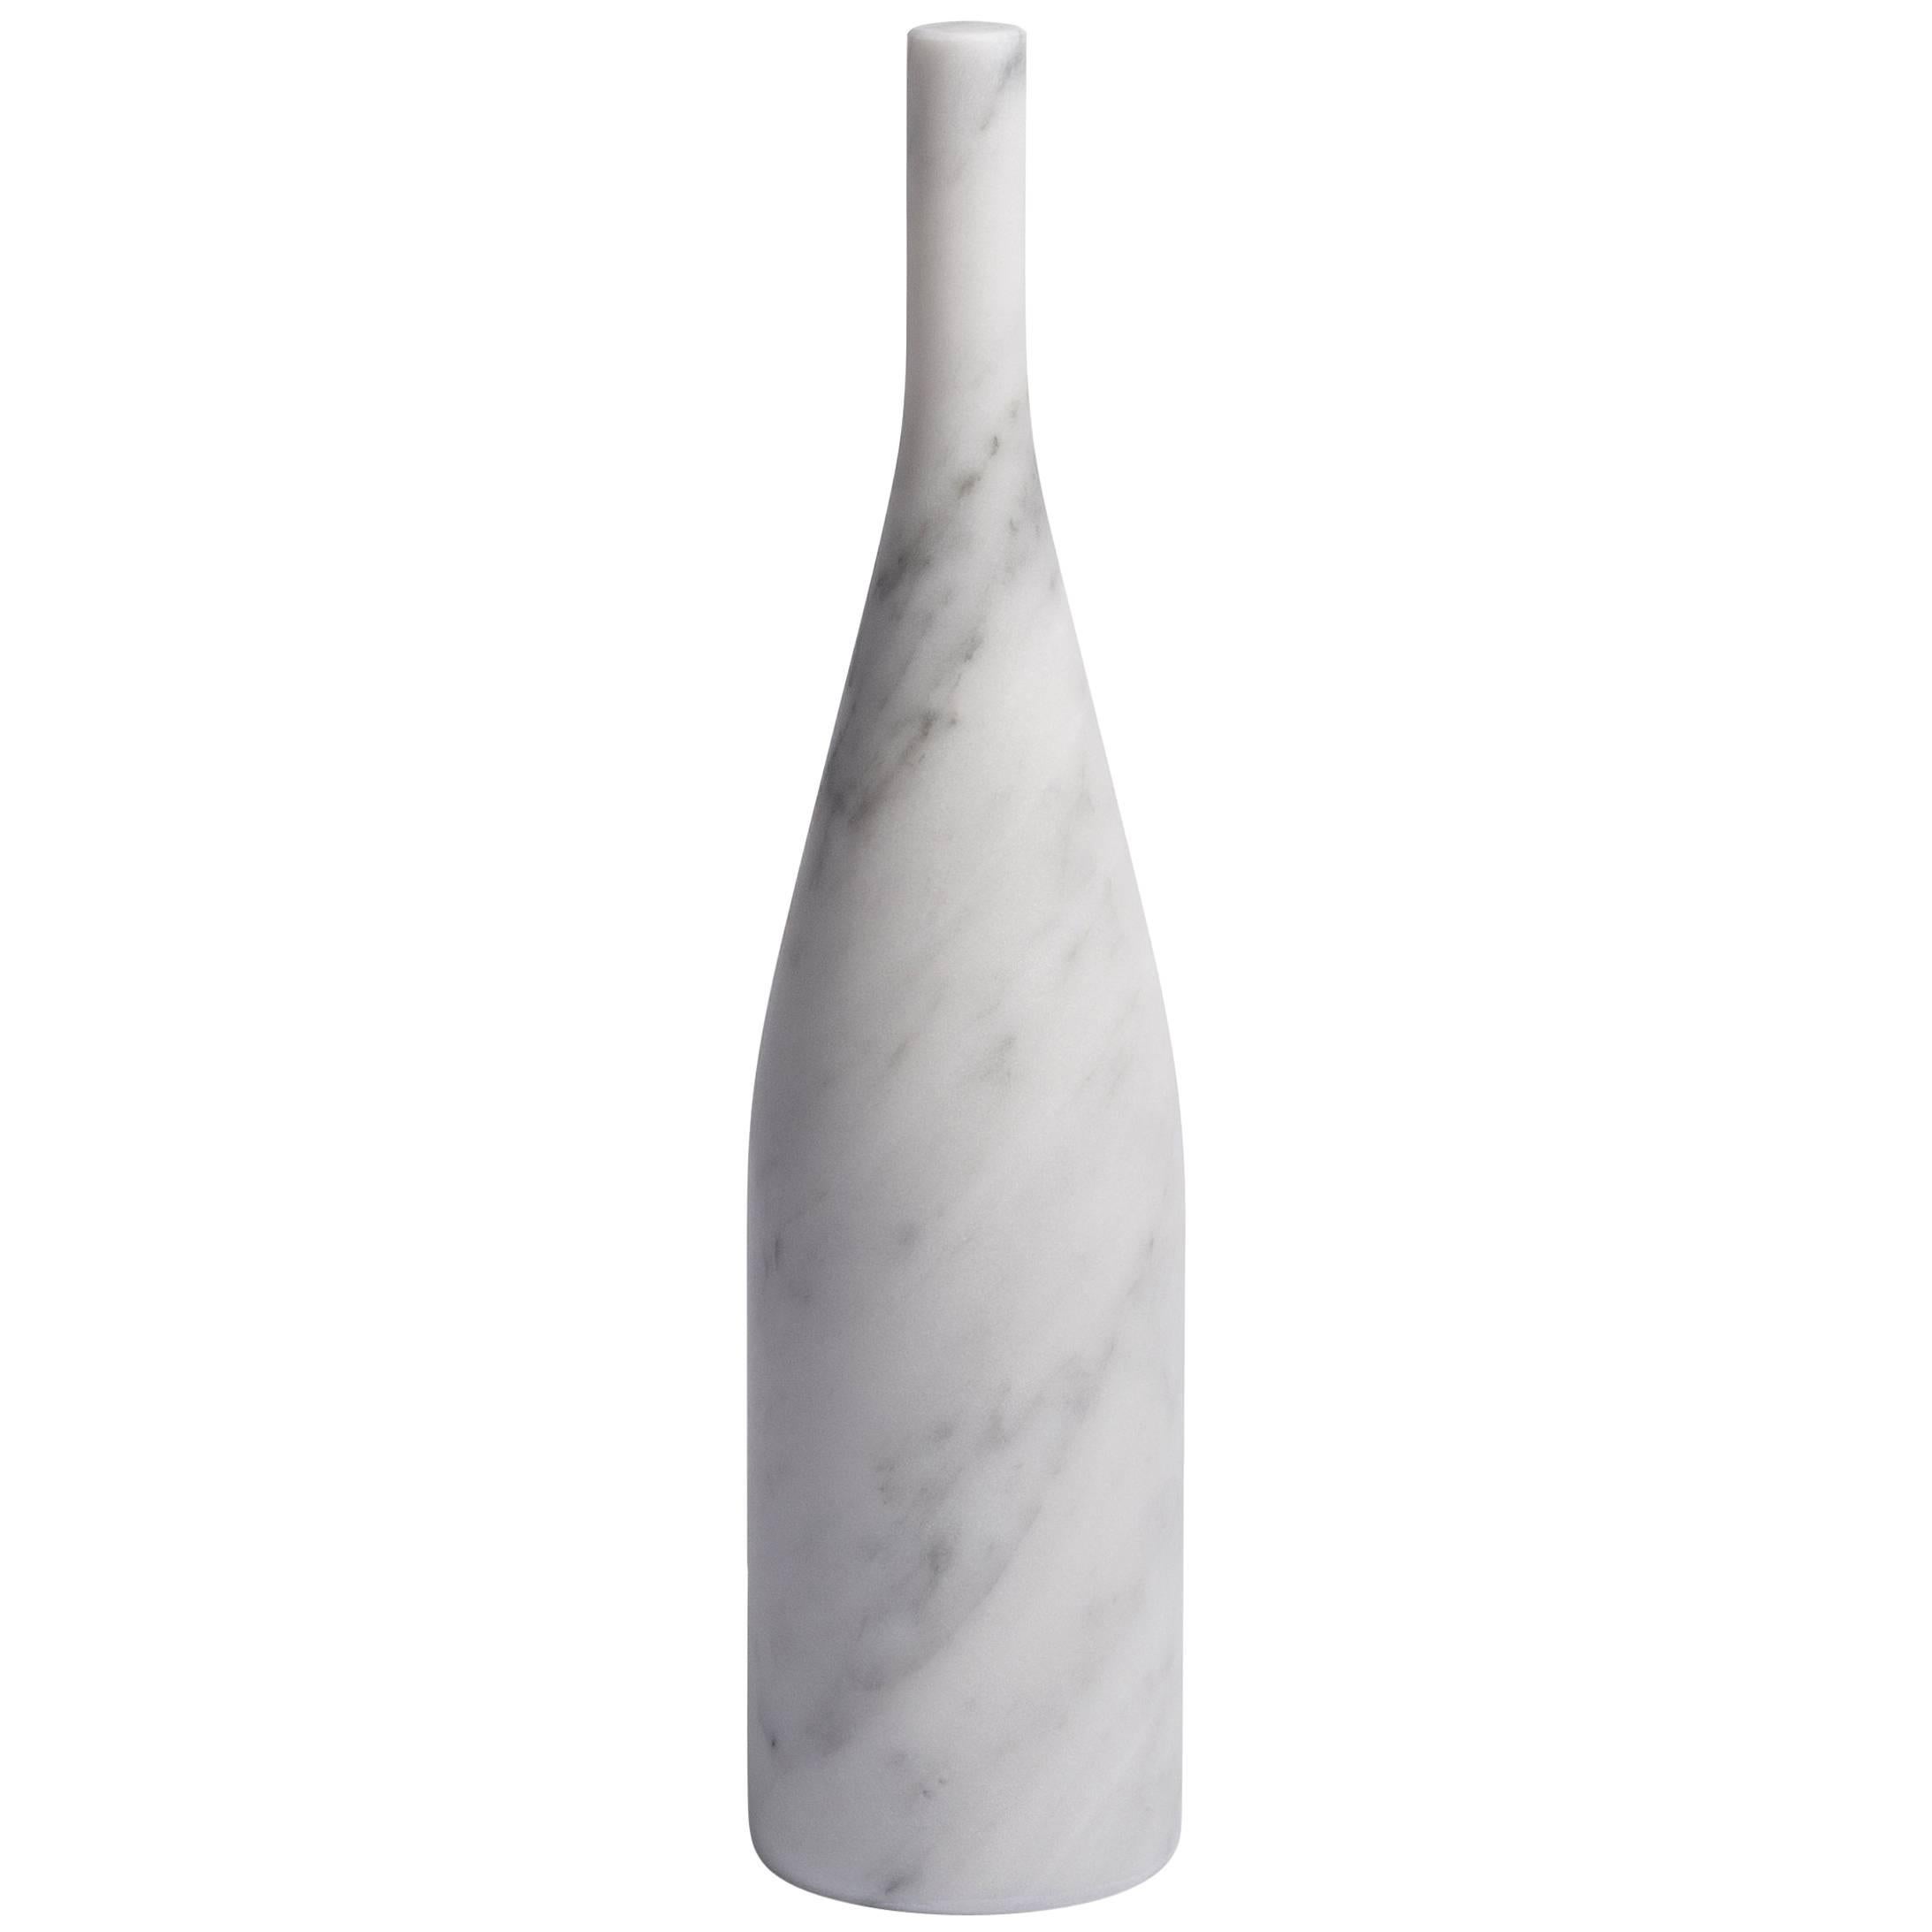 Salvatori Omaggio a Morandi Bottle Sculpture in Bianco Carrara by Elisa Ossino For Sale